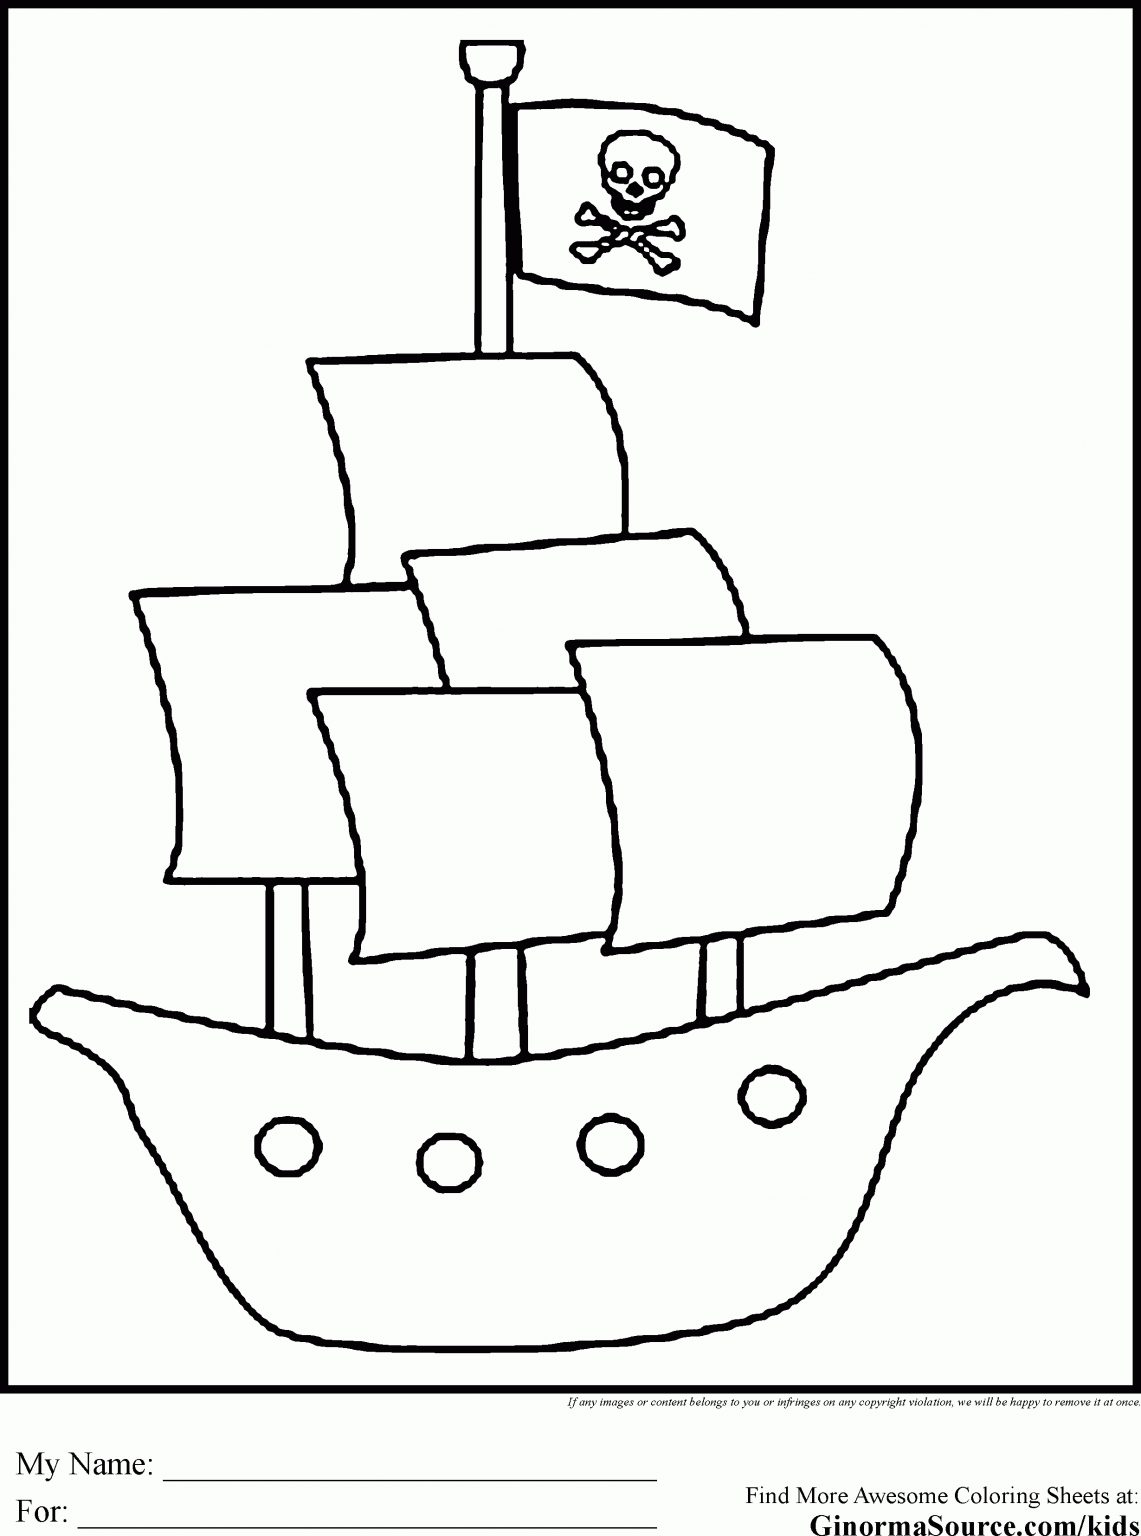 Malvorlage Piratenschiff - kinderbilder.download | kinderbilder.download